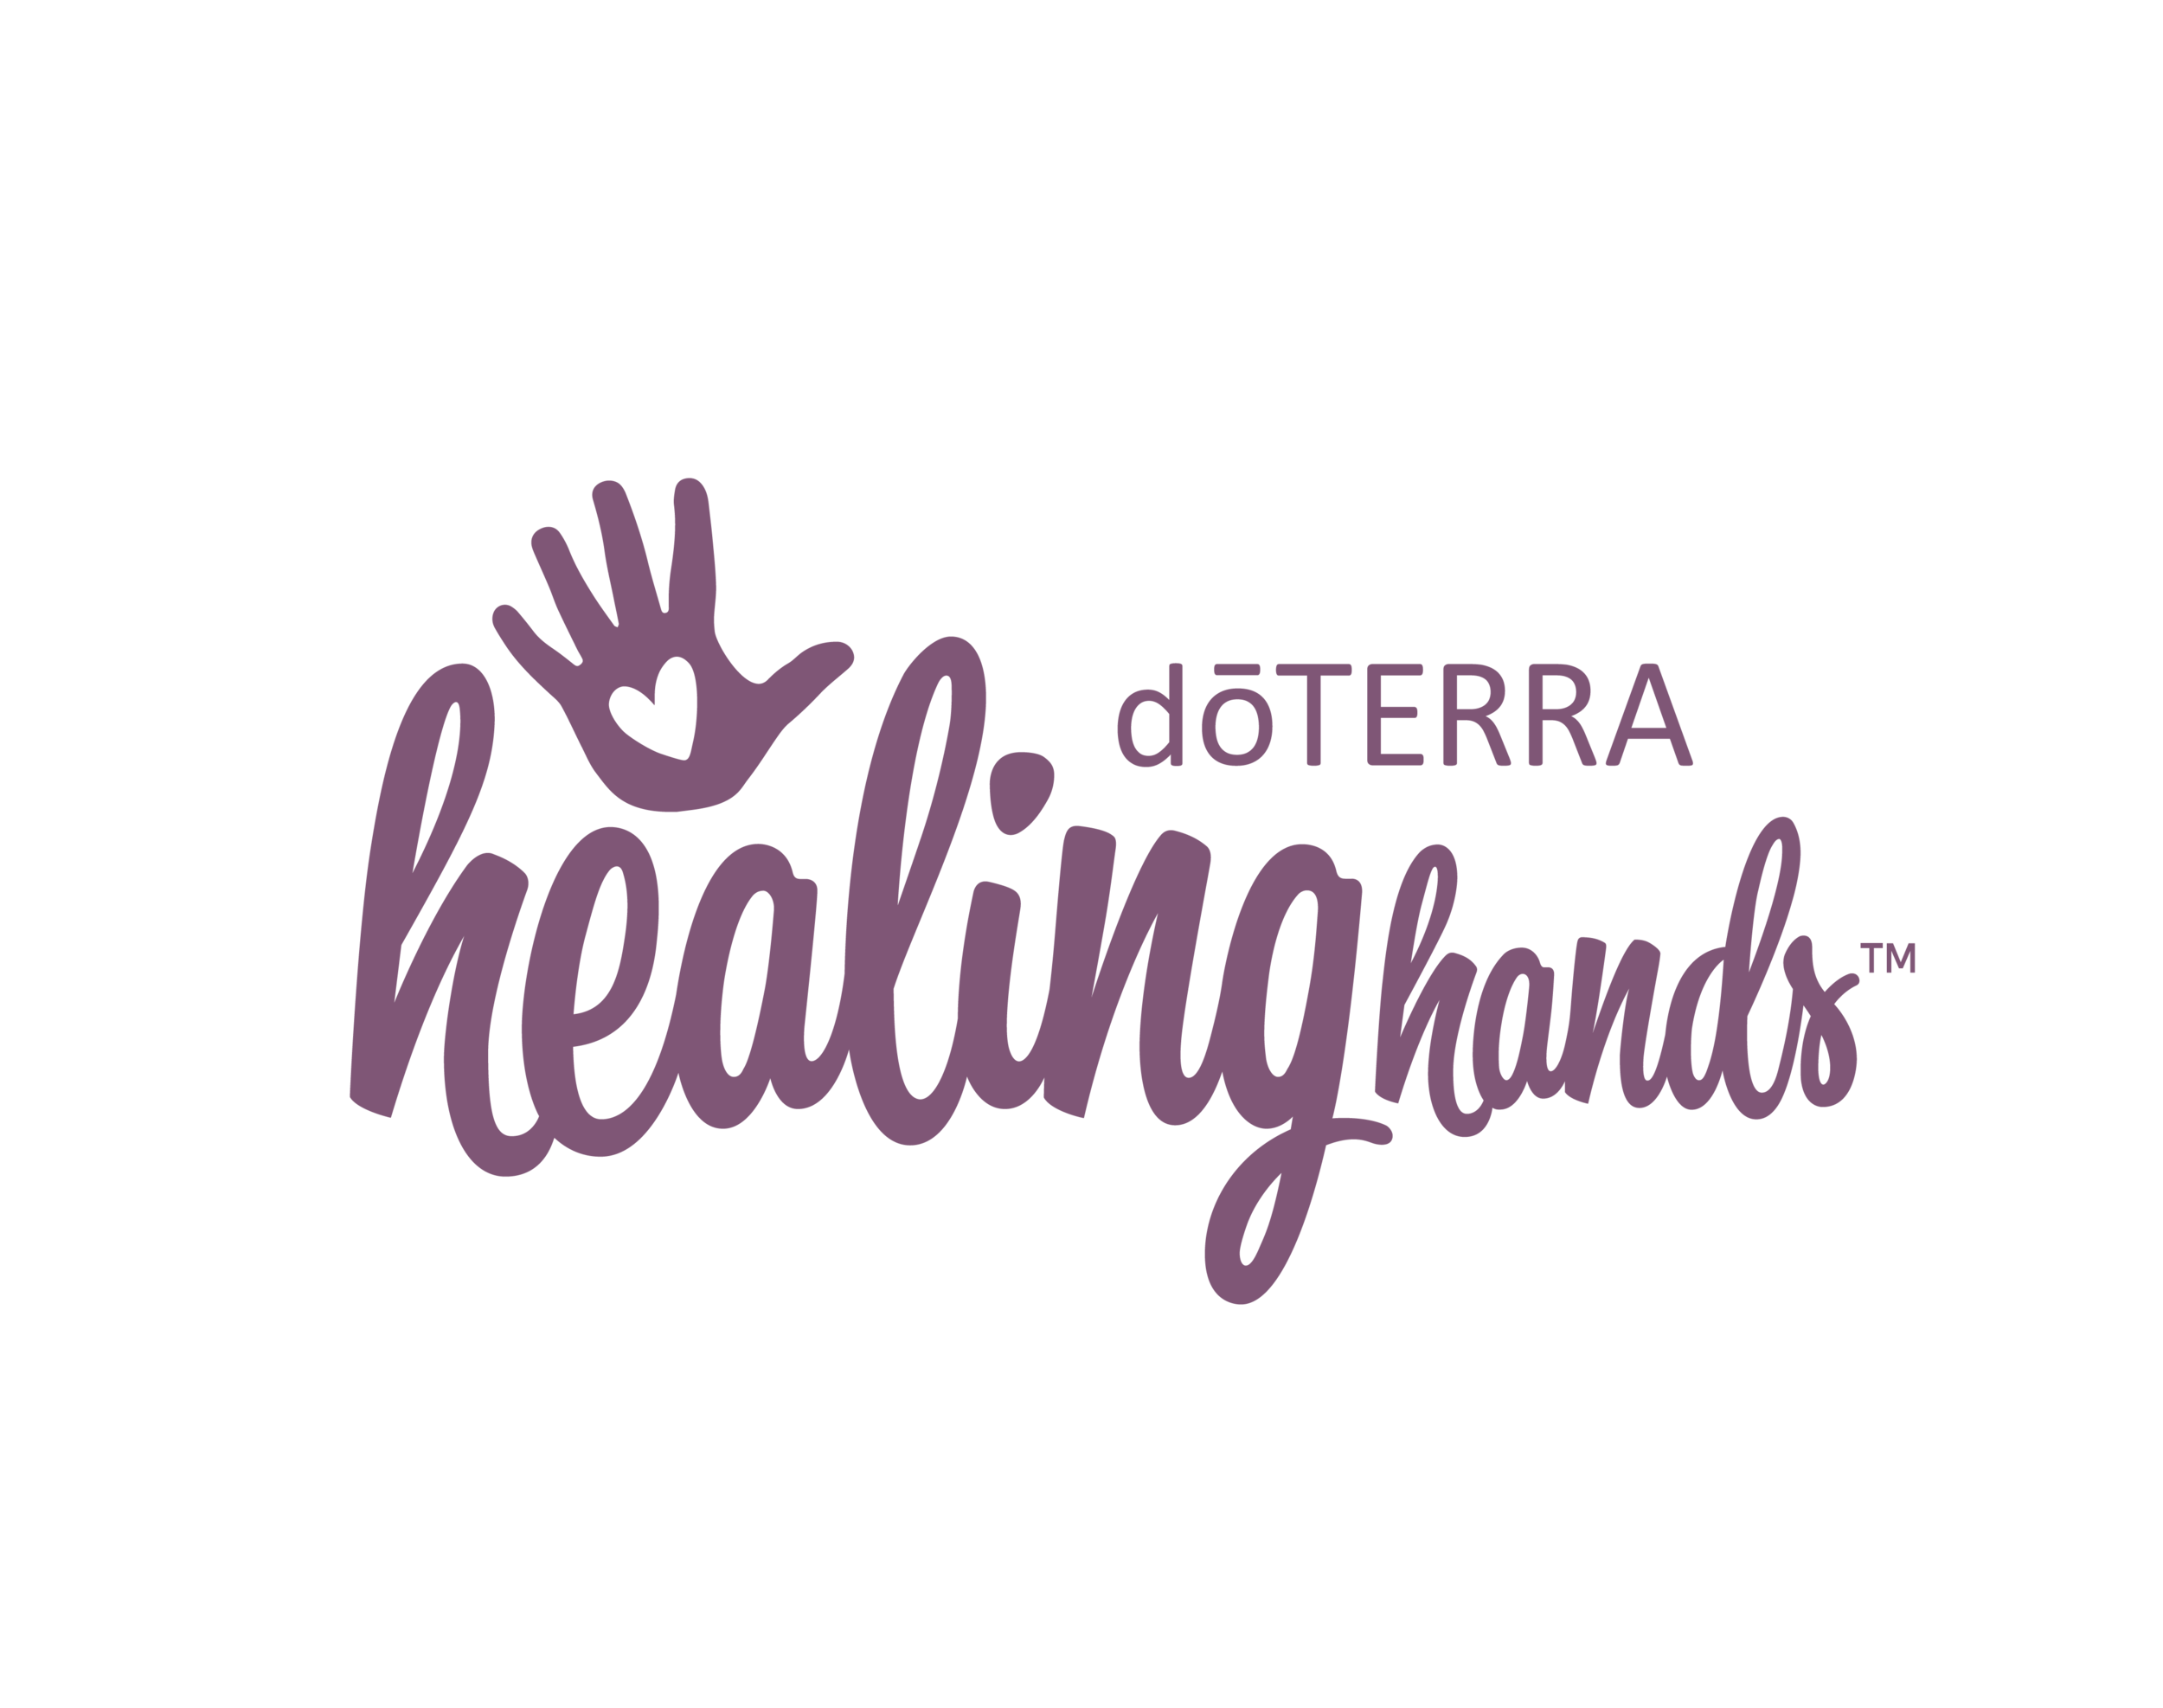 Doterra Healing Hands.png